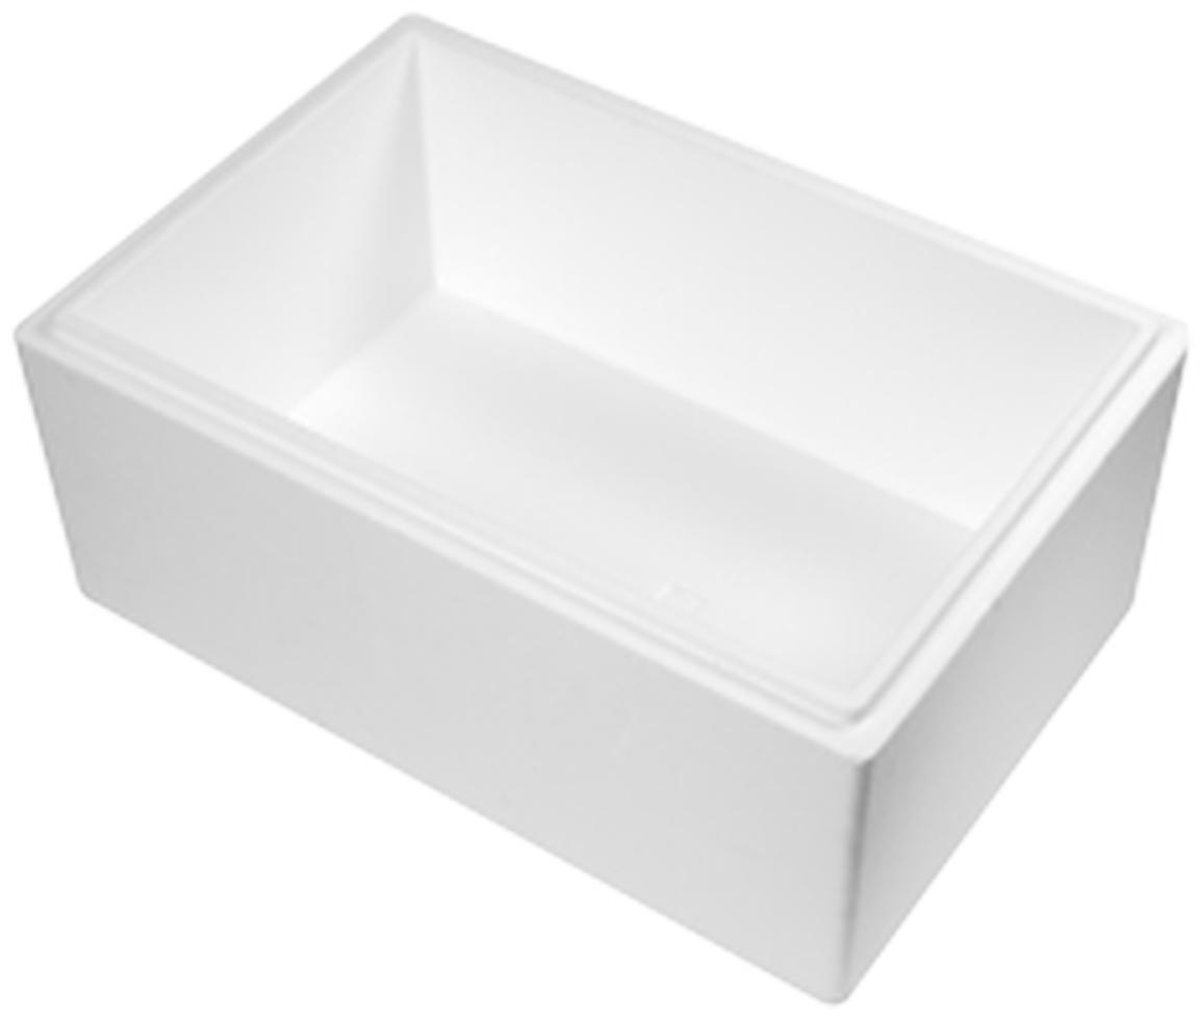 Thermobox 30 Liter (Met koelelementen) - Isolatie Doos - Droogijs Box - Tempex doos - EPS - Koelbox - Duurzaam (Inclusief 3 Ice gel packs 400ml)